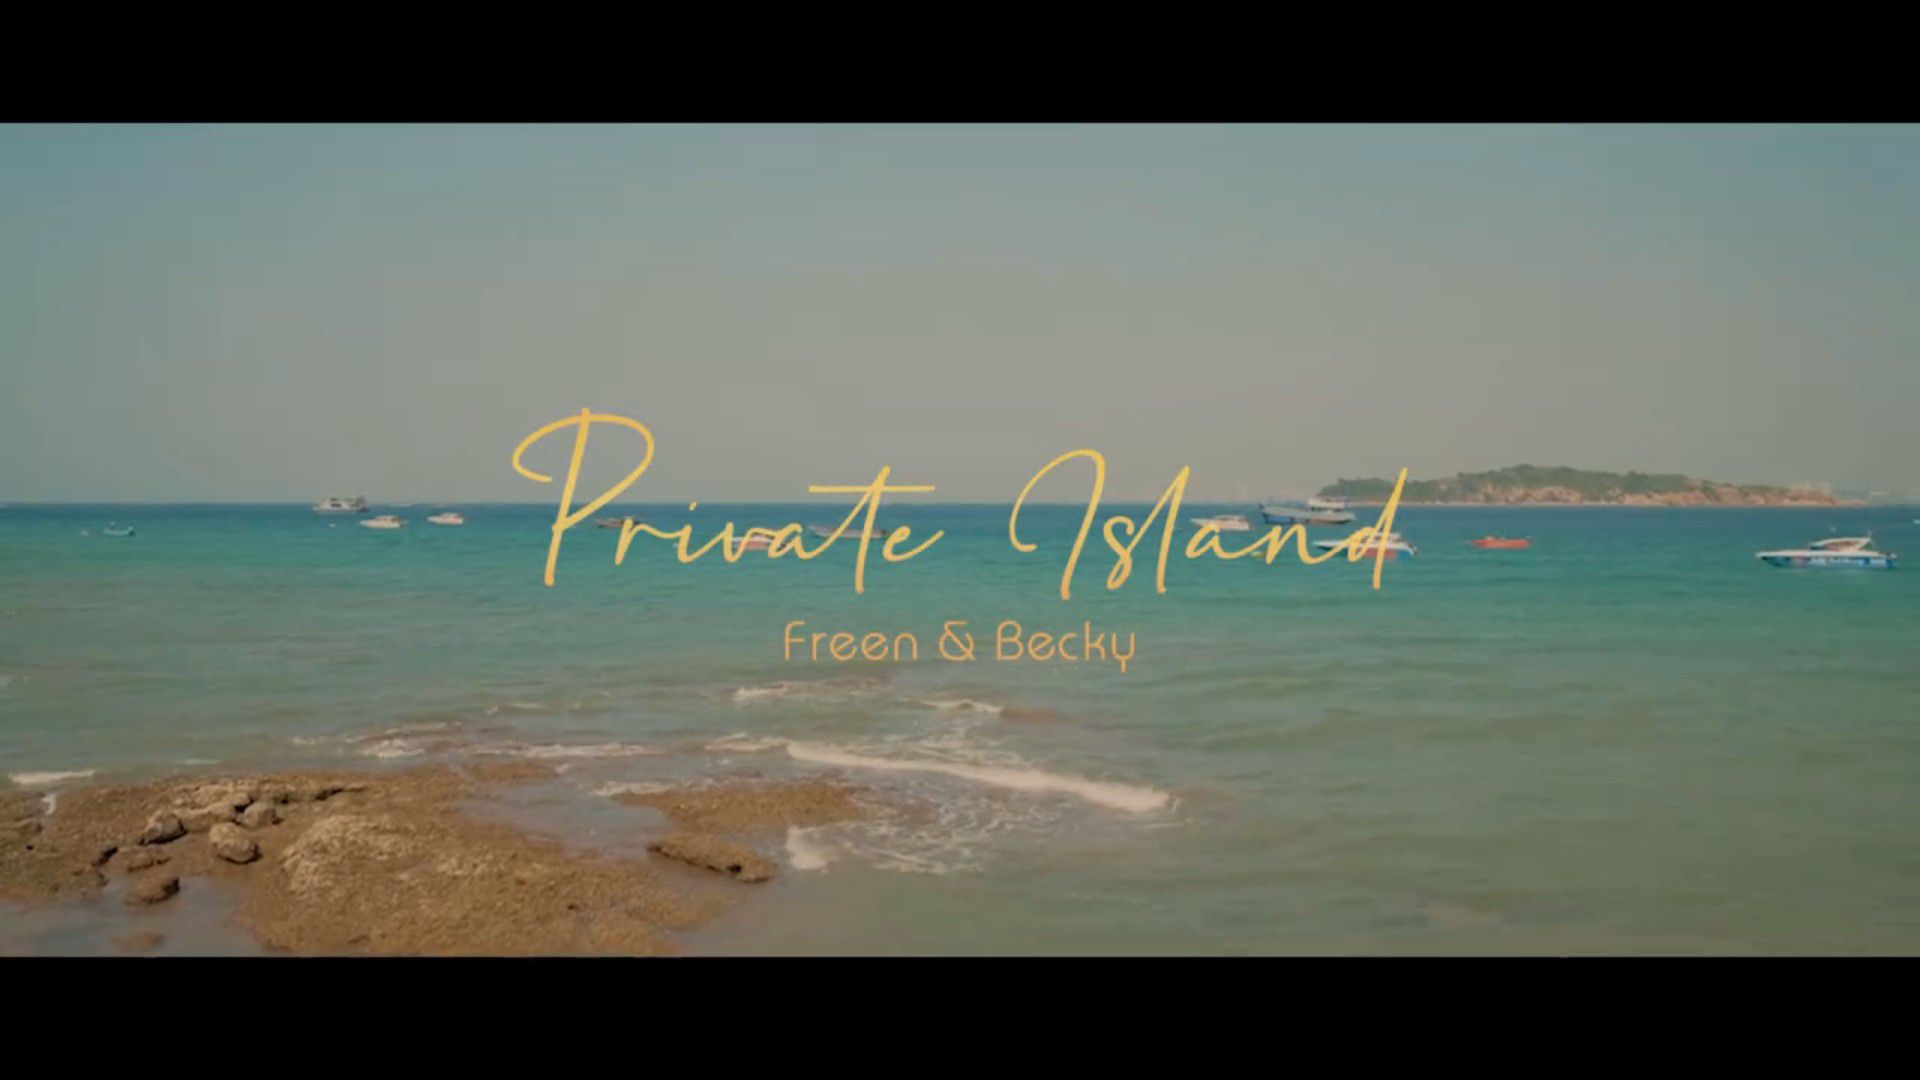 FreenBecky Private Island - BiliBili